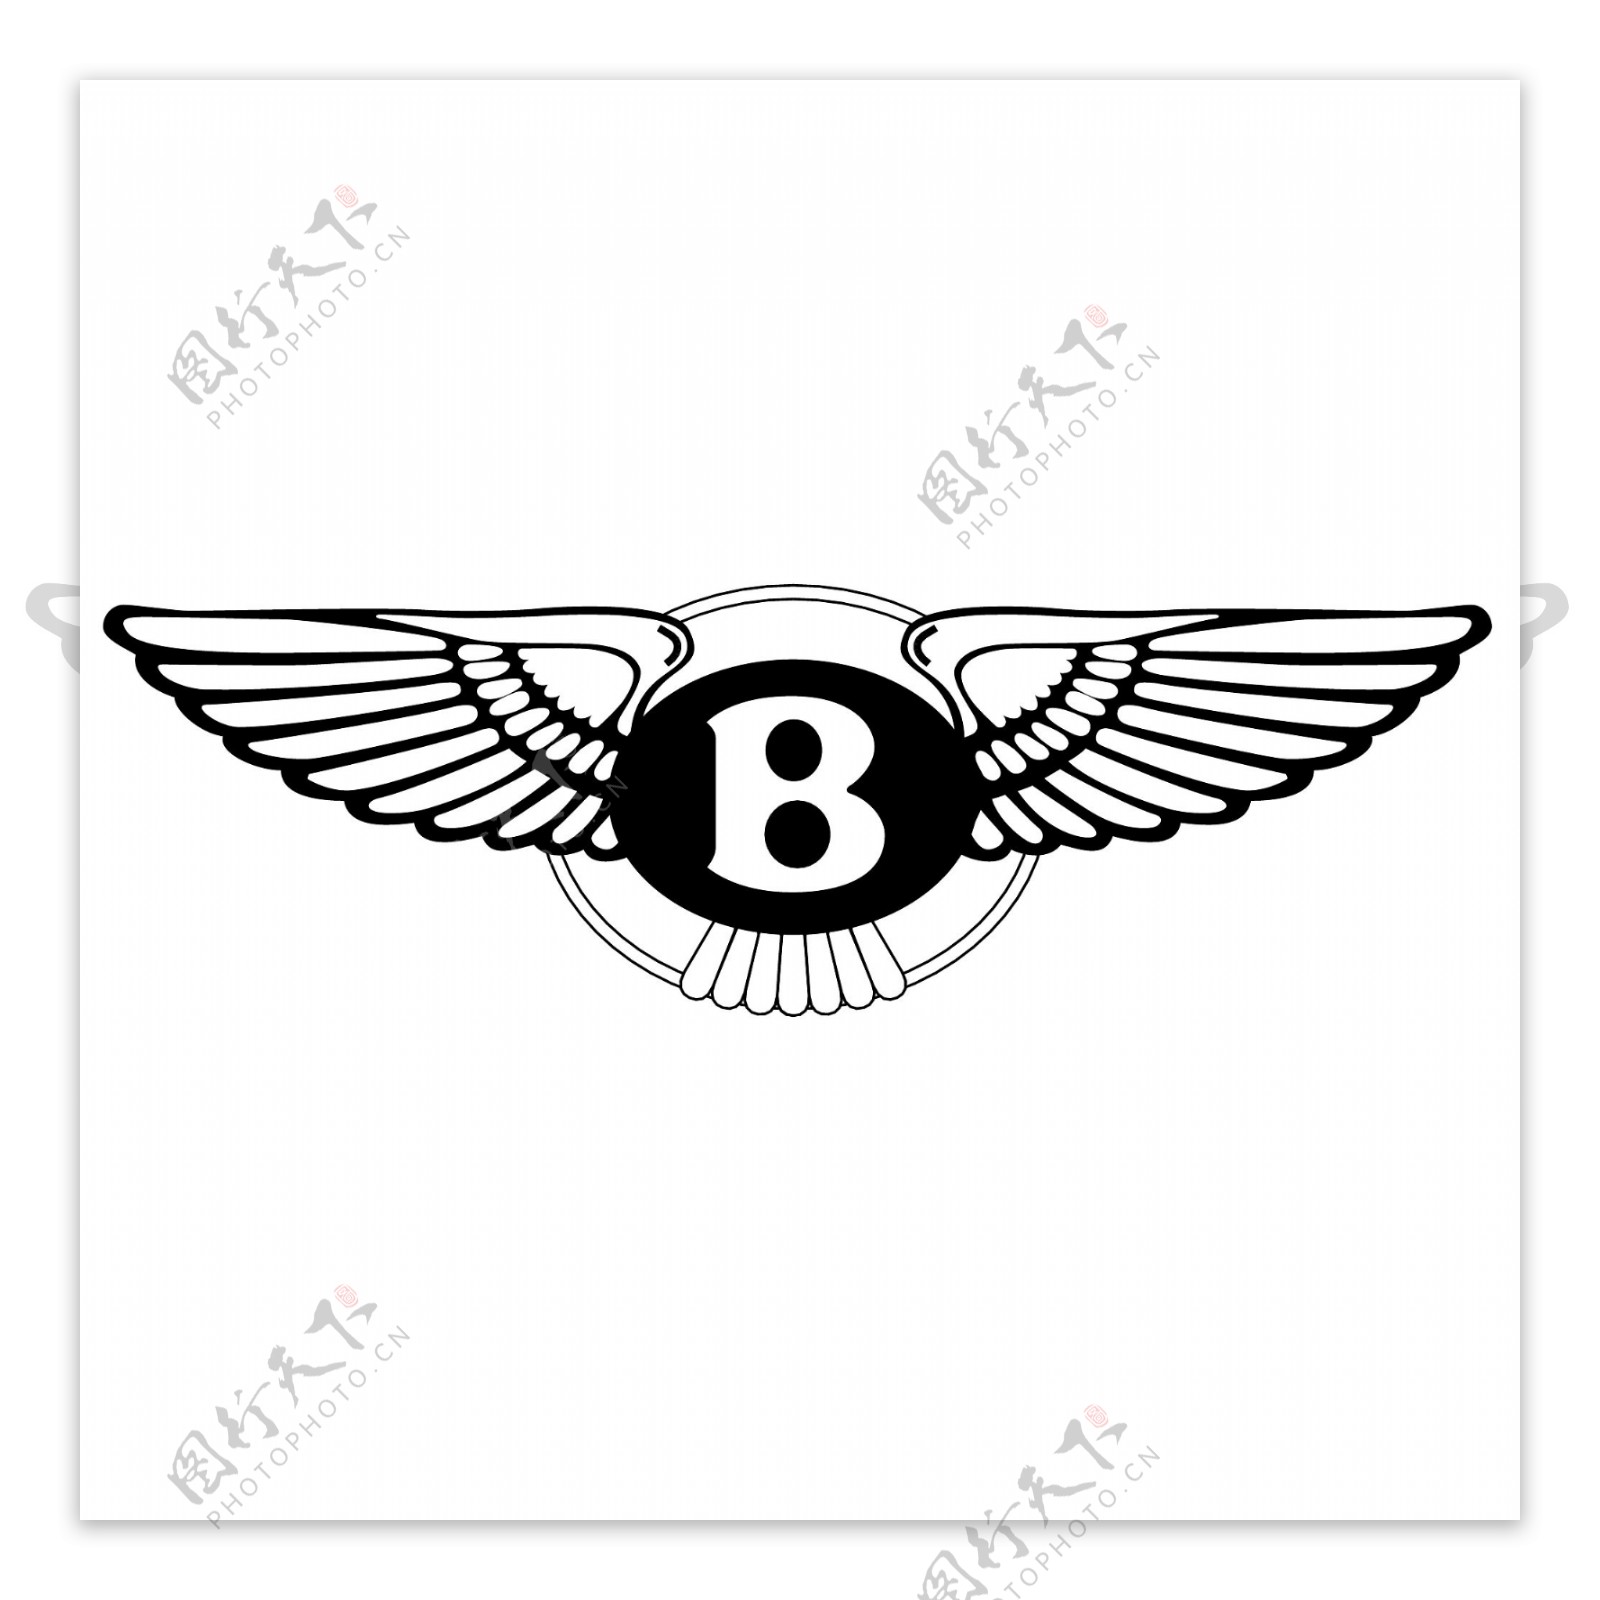 翅膀创意logo设计